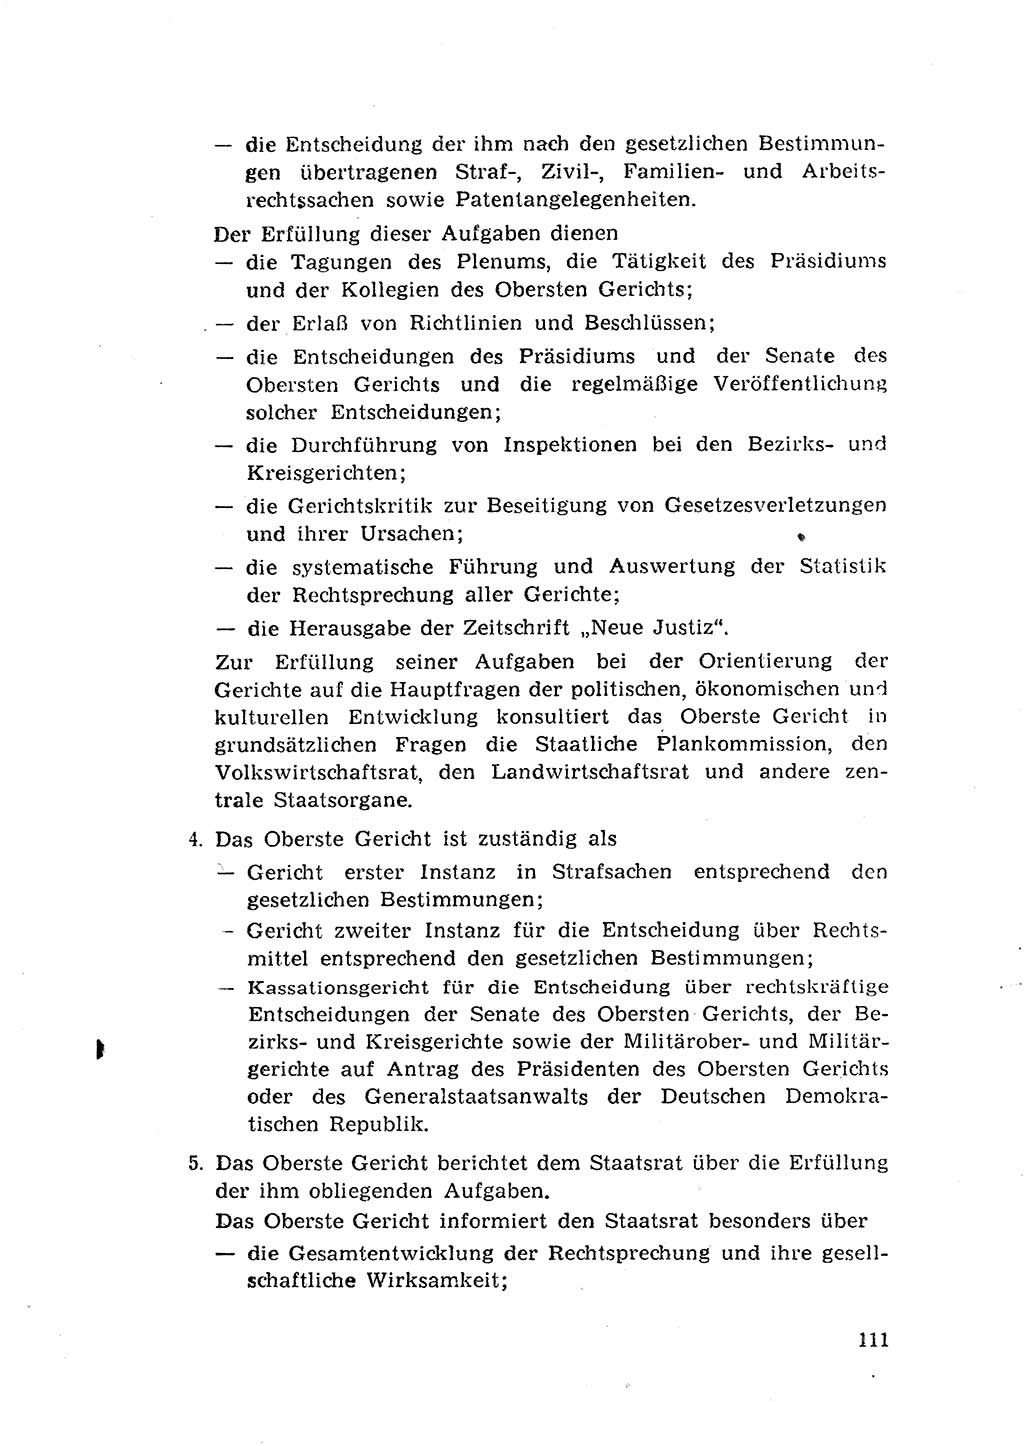 Rechtspflegeerlaß [Deutsche Demokratische Republik (DDR)] 1963, Seite 111 (R.-Pfl.-Erl. DDR 1963, S. 111)